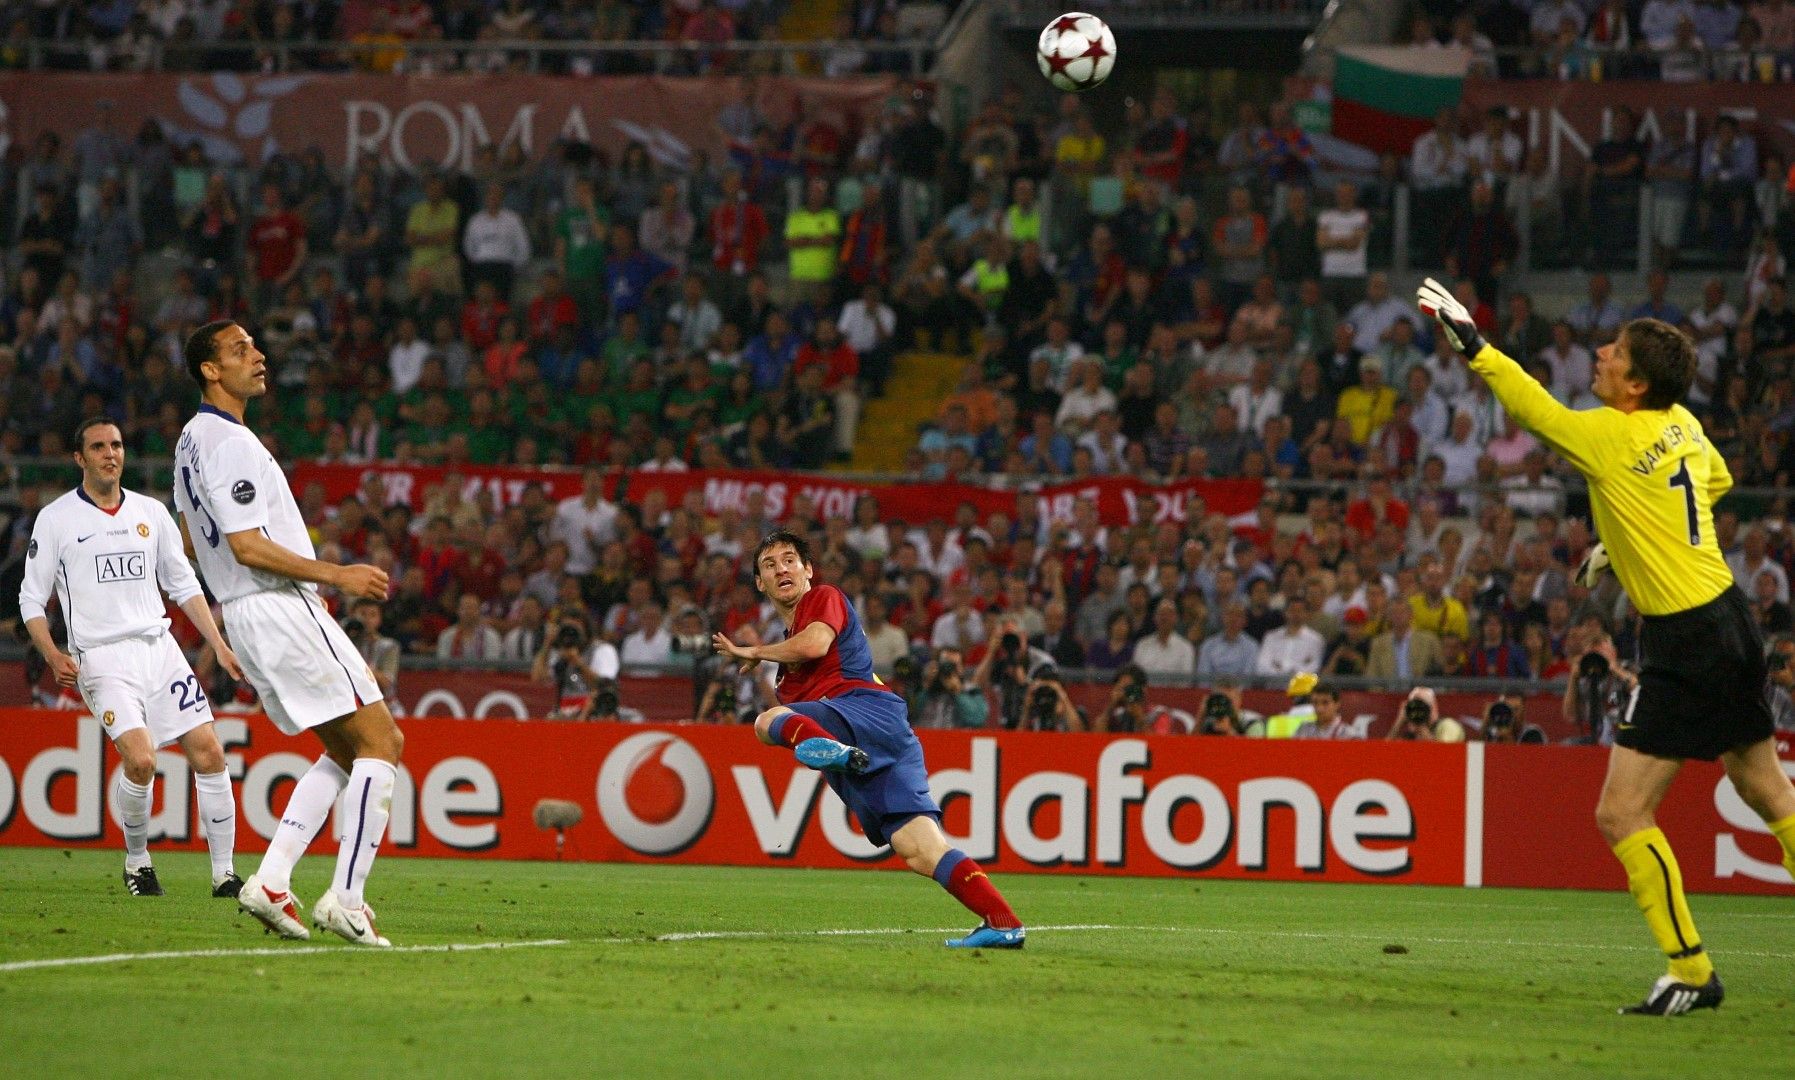 2009 г. Рим. Меси бележи с глава втория гол, с което нещата са ясни - Барселона - Юнайтед 2:0.